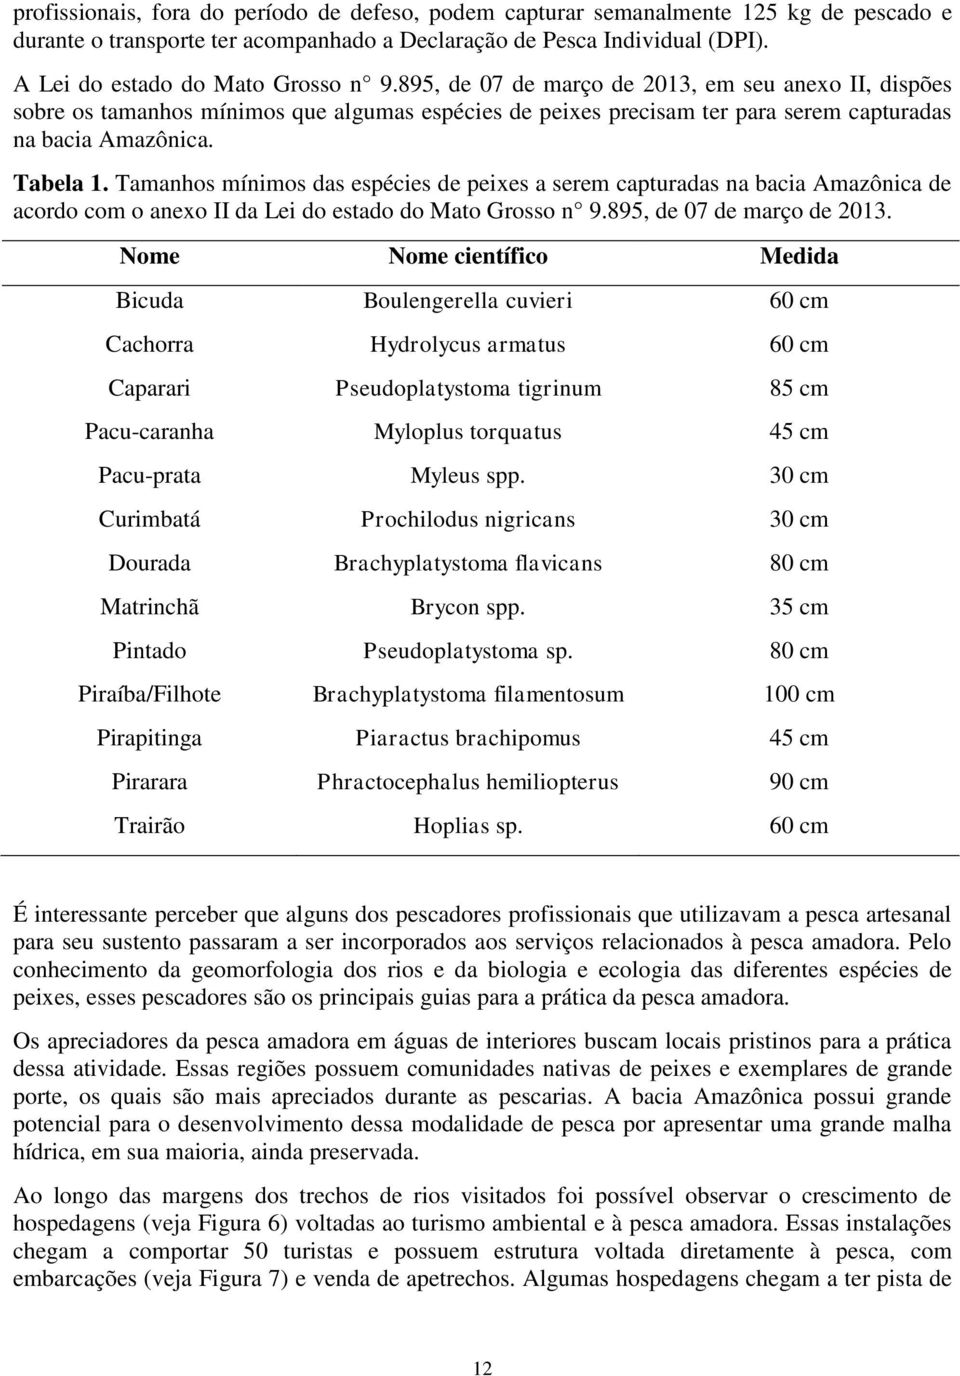 Tabela 1. Tamanhos mínimos das espécies de peixes a serem capturadas na bacia Amazônica de acordo com o anexo II da Lei do estado do Mato Grosso n 9.895, de 07 de março de 2013.